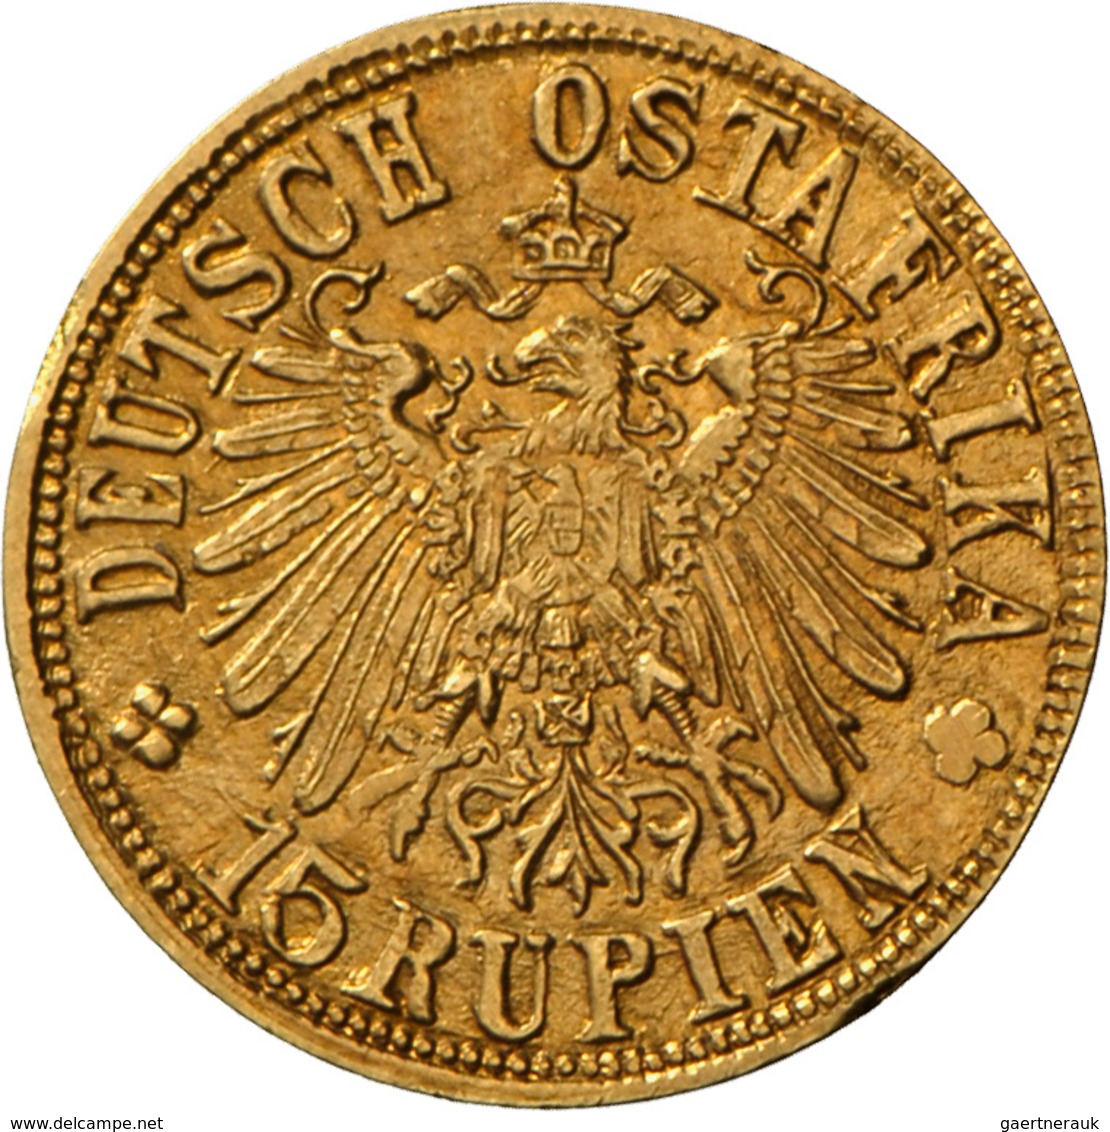 Deutsch-Ostafrika: 15 Rupien 1916 T, Tabora, 7,07 G. 900/1000 Gold, Geprägt Mit Gold Aus Der Sekenke - Africa Orientale Tedesca